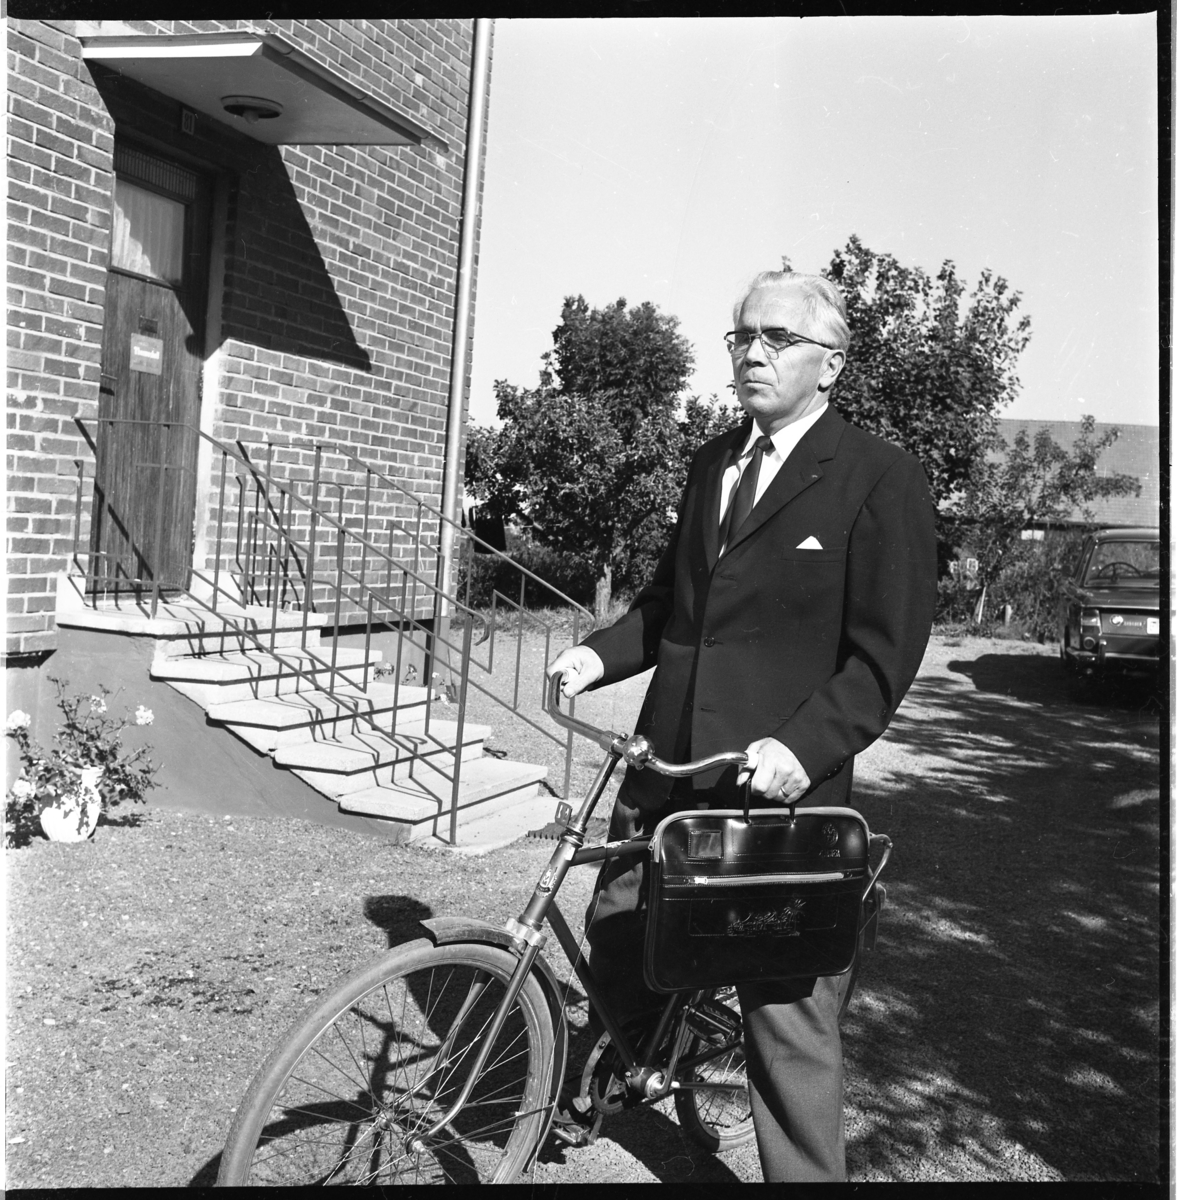 Pastor Robert Svensson står grensle över en cykel med en portfölj i ena handen.